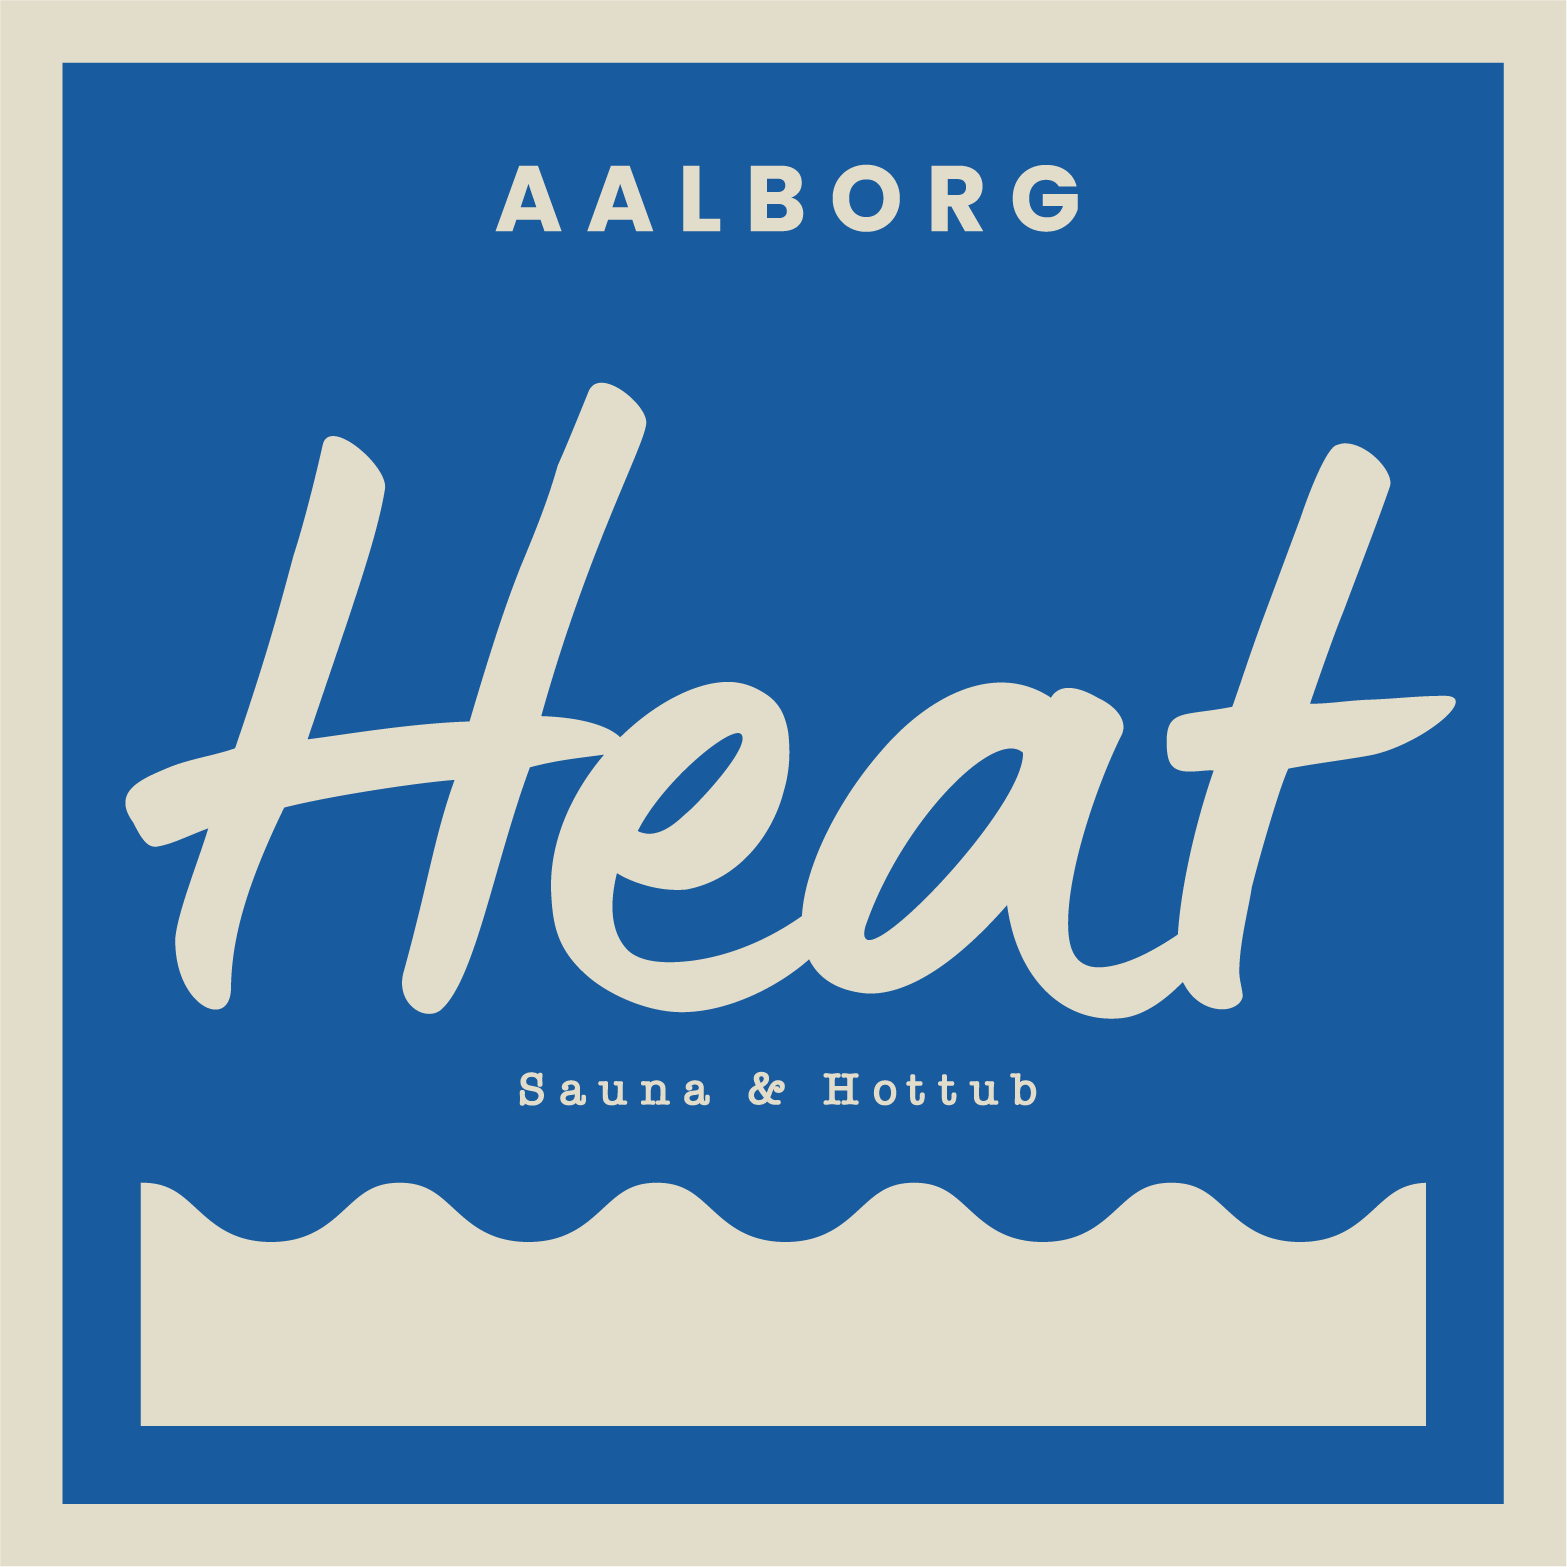 aalborg heat logo